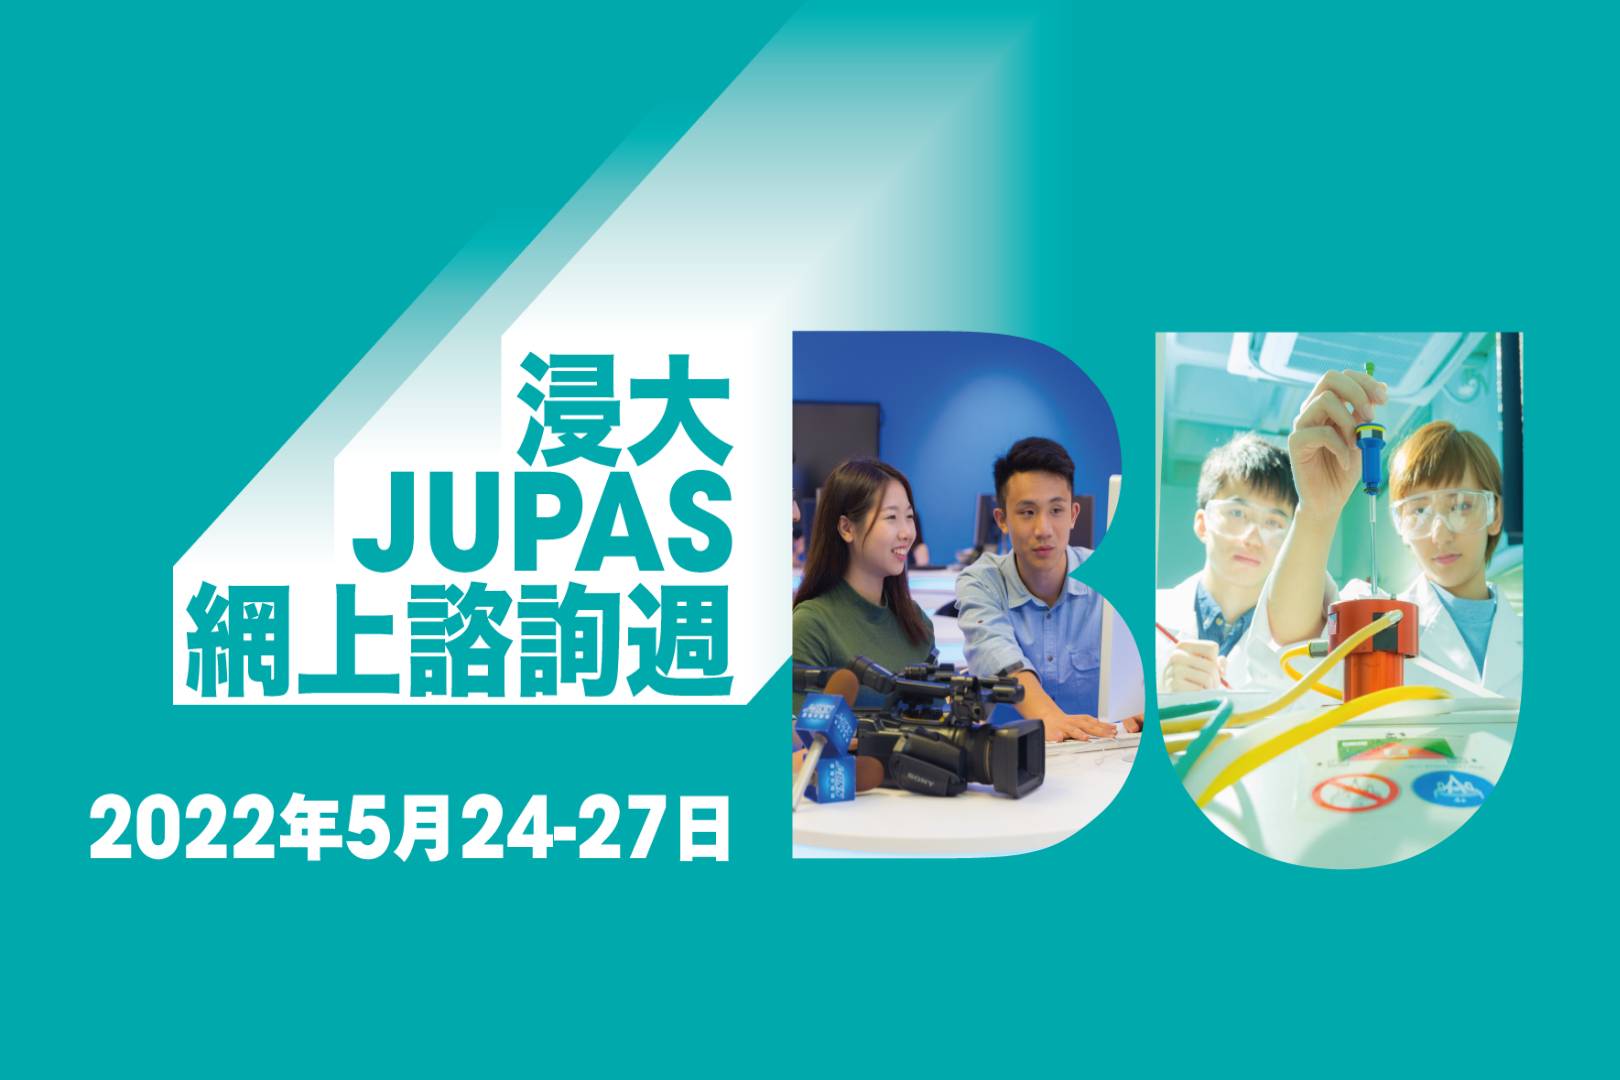 浸大将于5月24至27日举办2022年「JUPAS网上咨询周」。